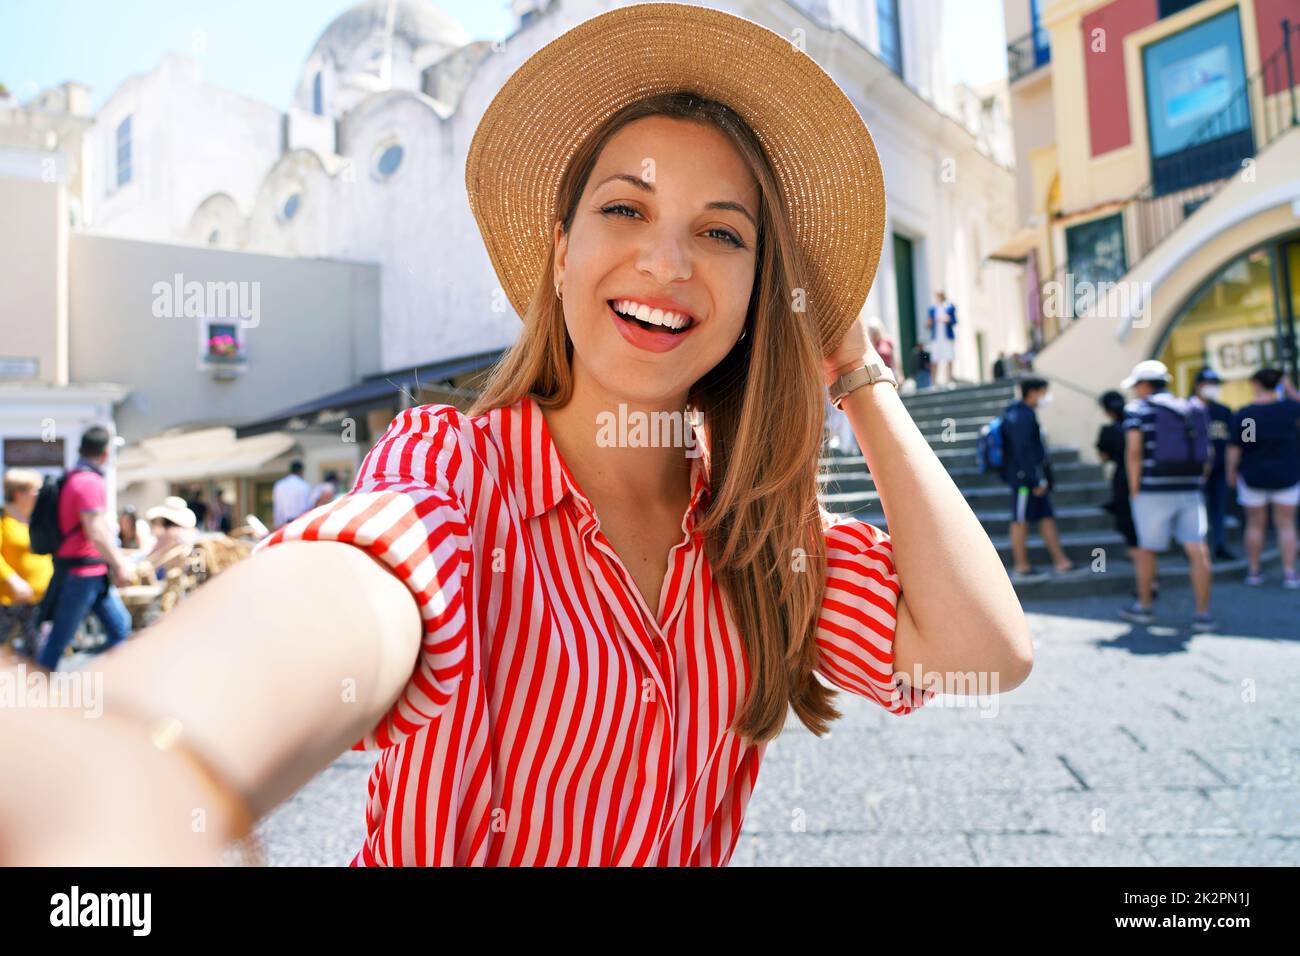 Schöne Mode-Mädchen mit gestreiftem Kleid und Hut Aufnahme Selfie-Foto in Capri Piazzetta Platz, Capri Island, Italien Stockfoto